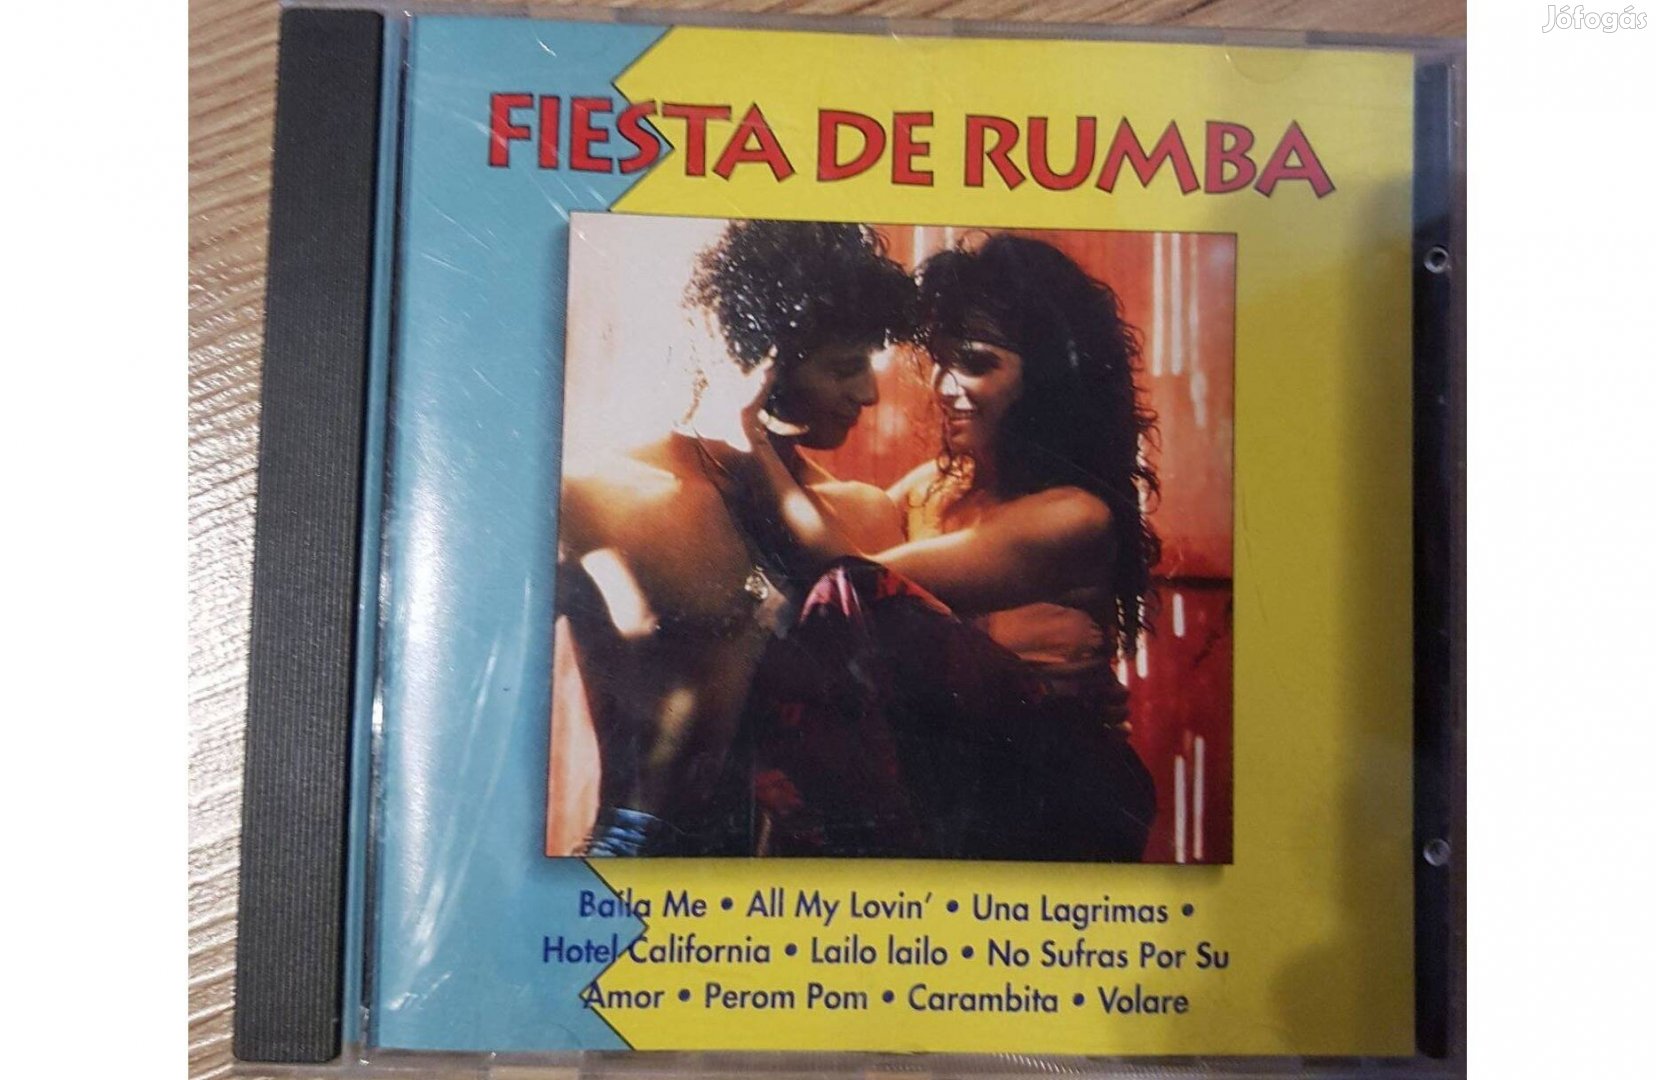 Los Intis - Fiesta De Rumba CD